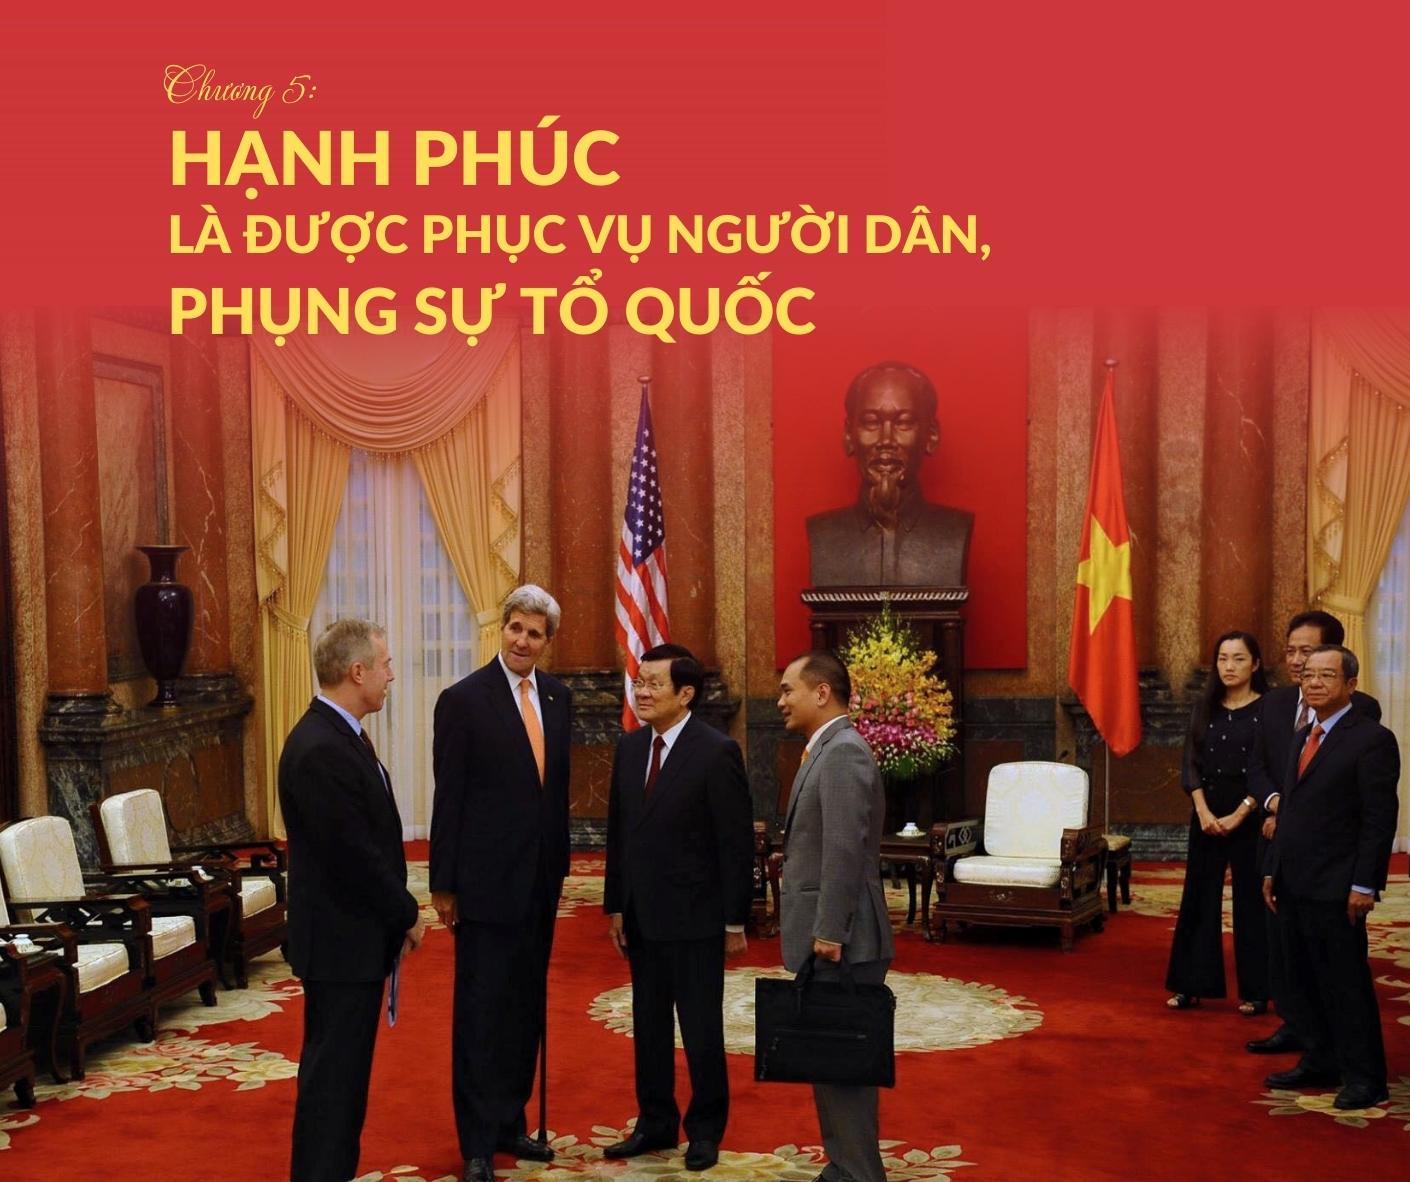 [Megastory] Ông Phạm Tuấn Anh, người sáng lập trường Minh Việt (MVA): Chương 5 - Hạnh phúc là được phục vụ người dân, phụng sự tổ quốc